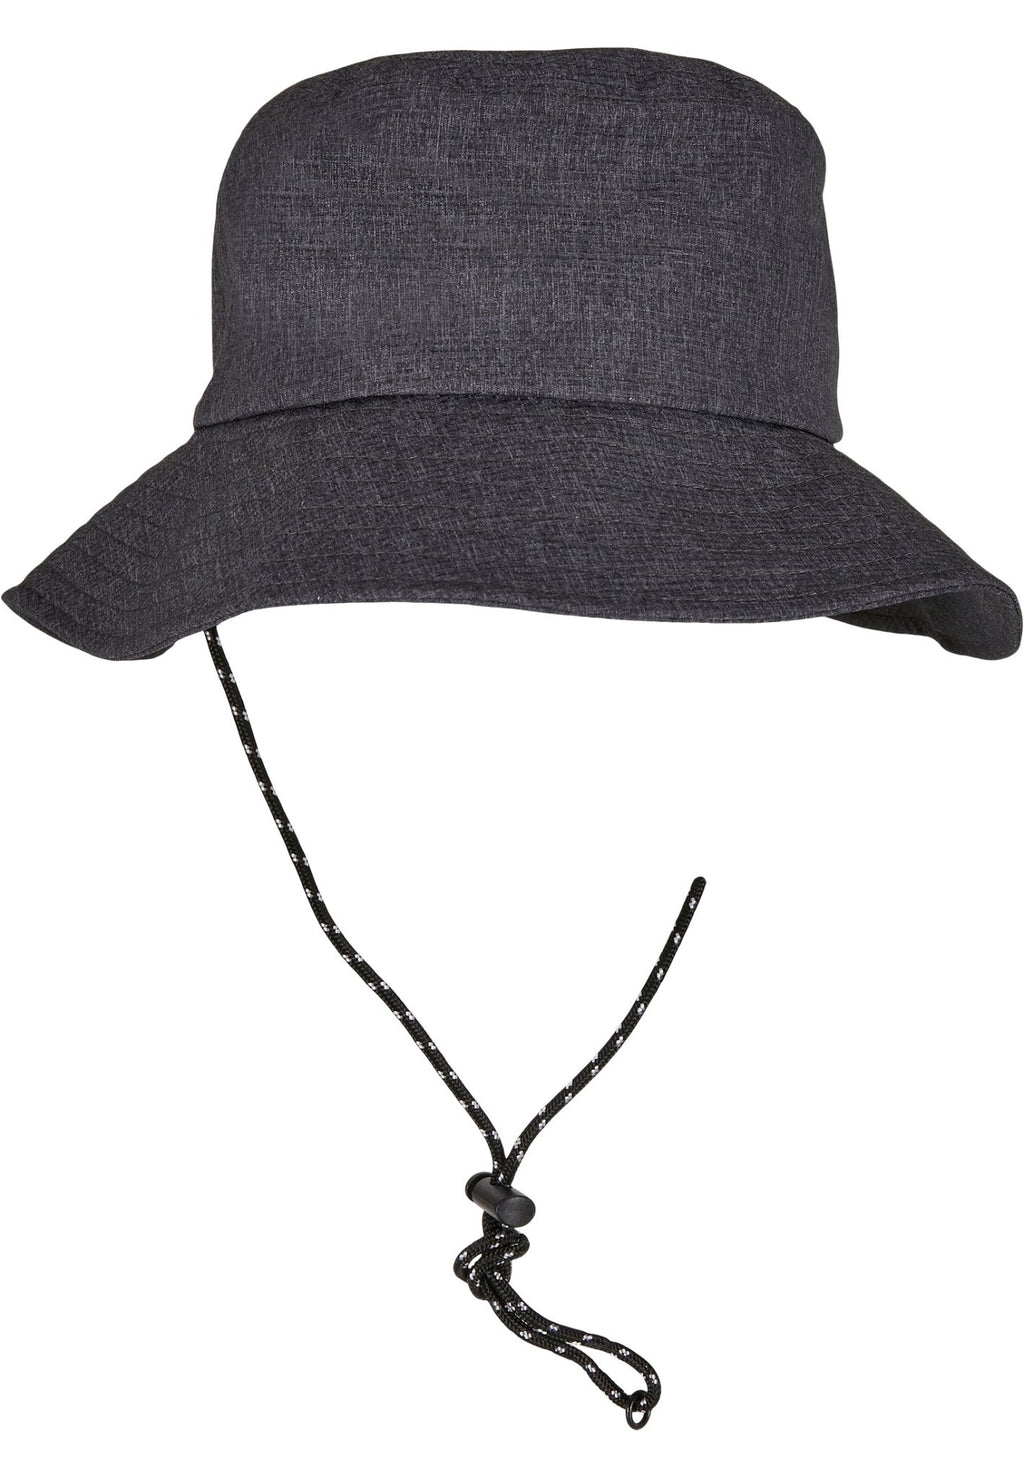 Casquette ajustable Flexfit Bucket Hat - Gris chiné